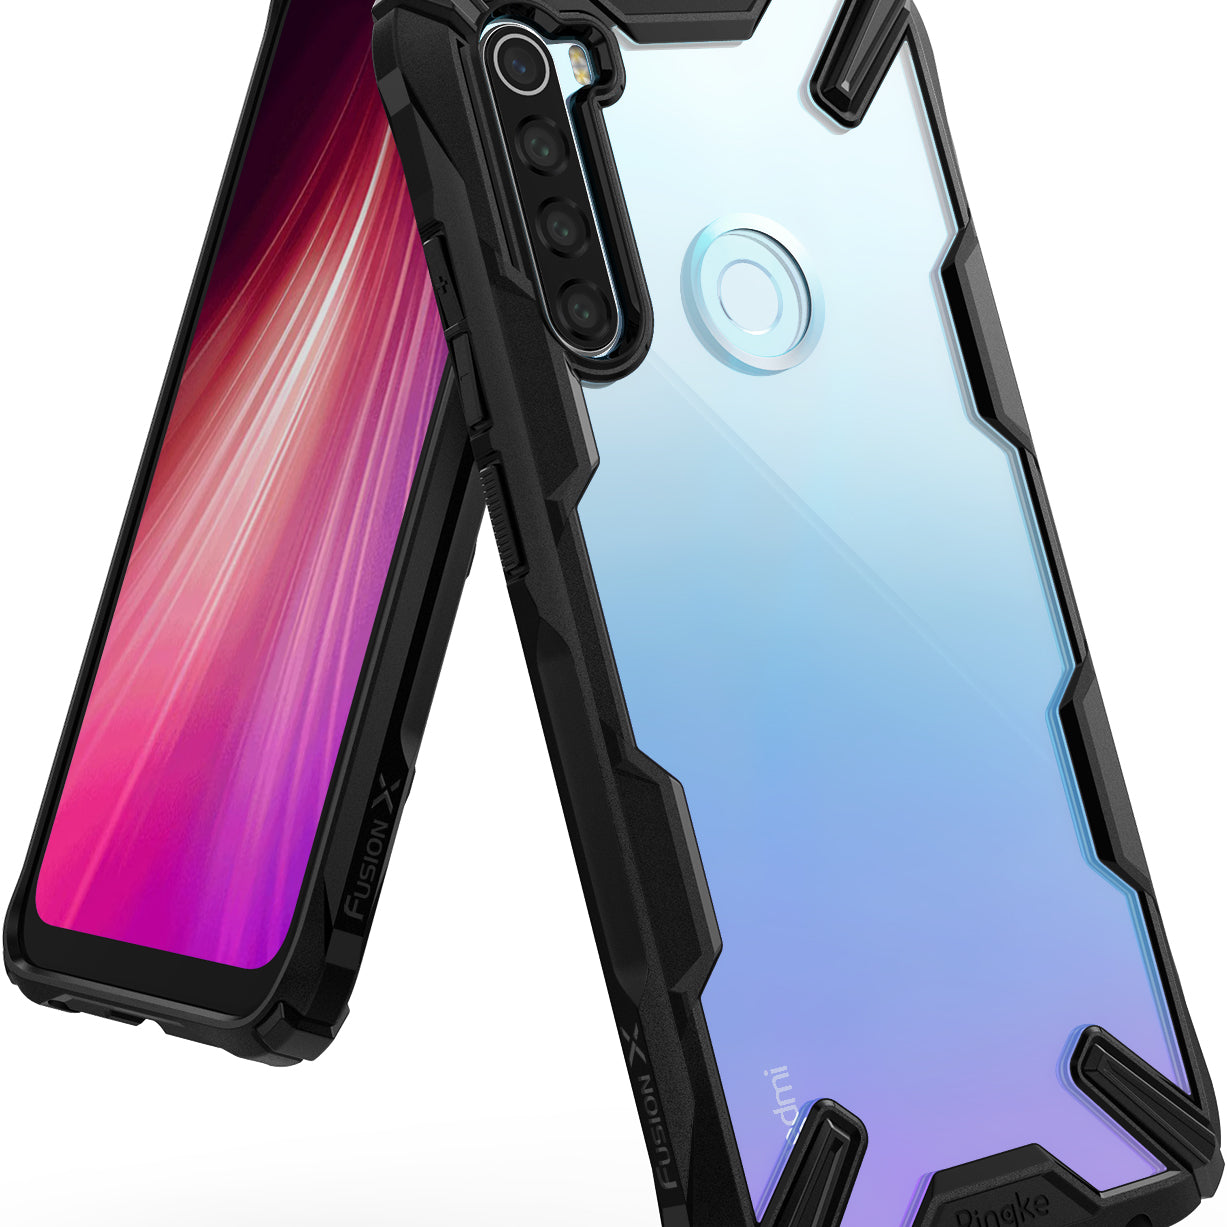 Ringke FUSION-X Design Case for Xiaomi Redmi Note 8 (2019) - black